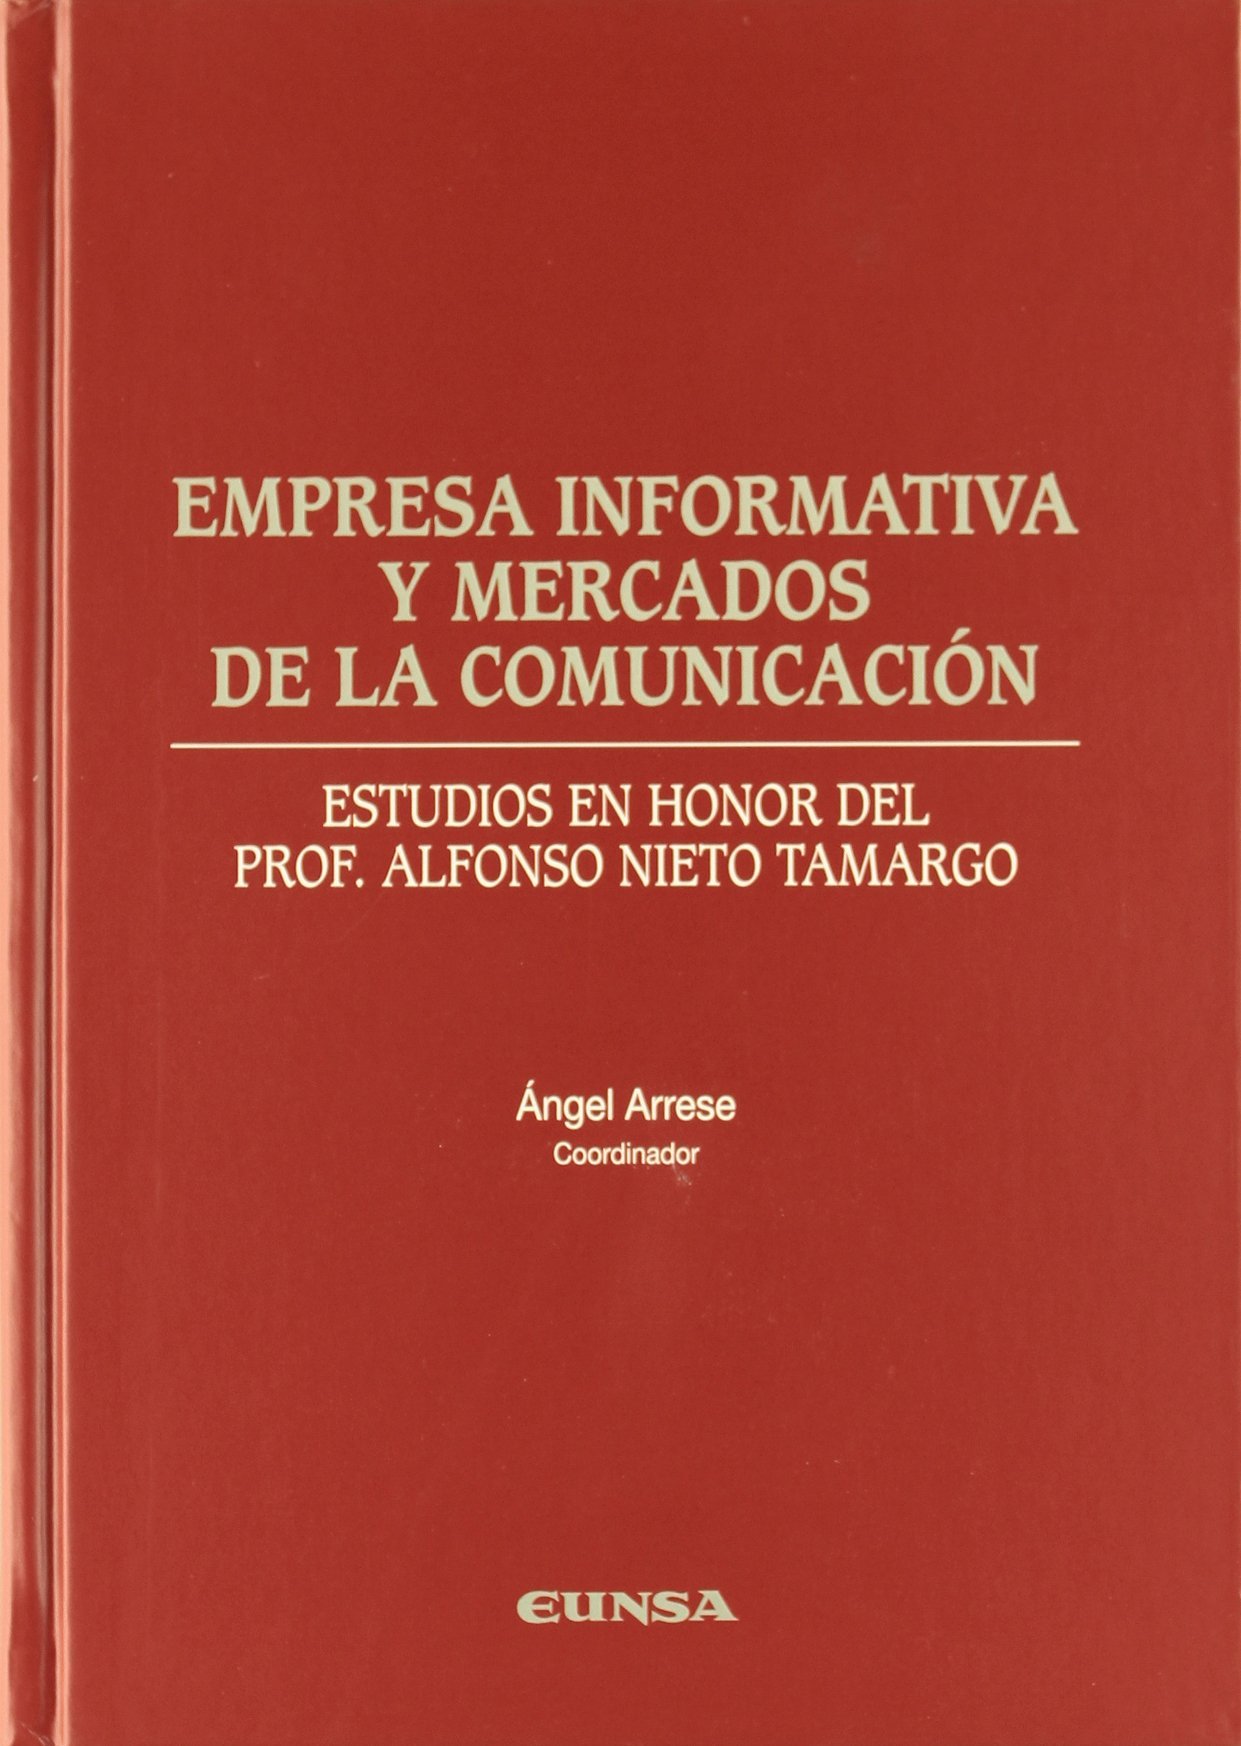 Imagen de portada del libro Empresa informativa y mercados de la comunicación